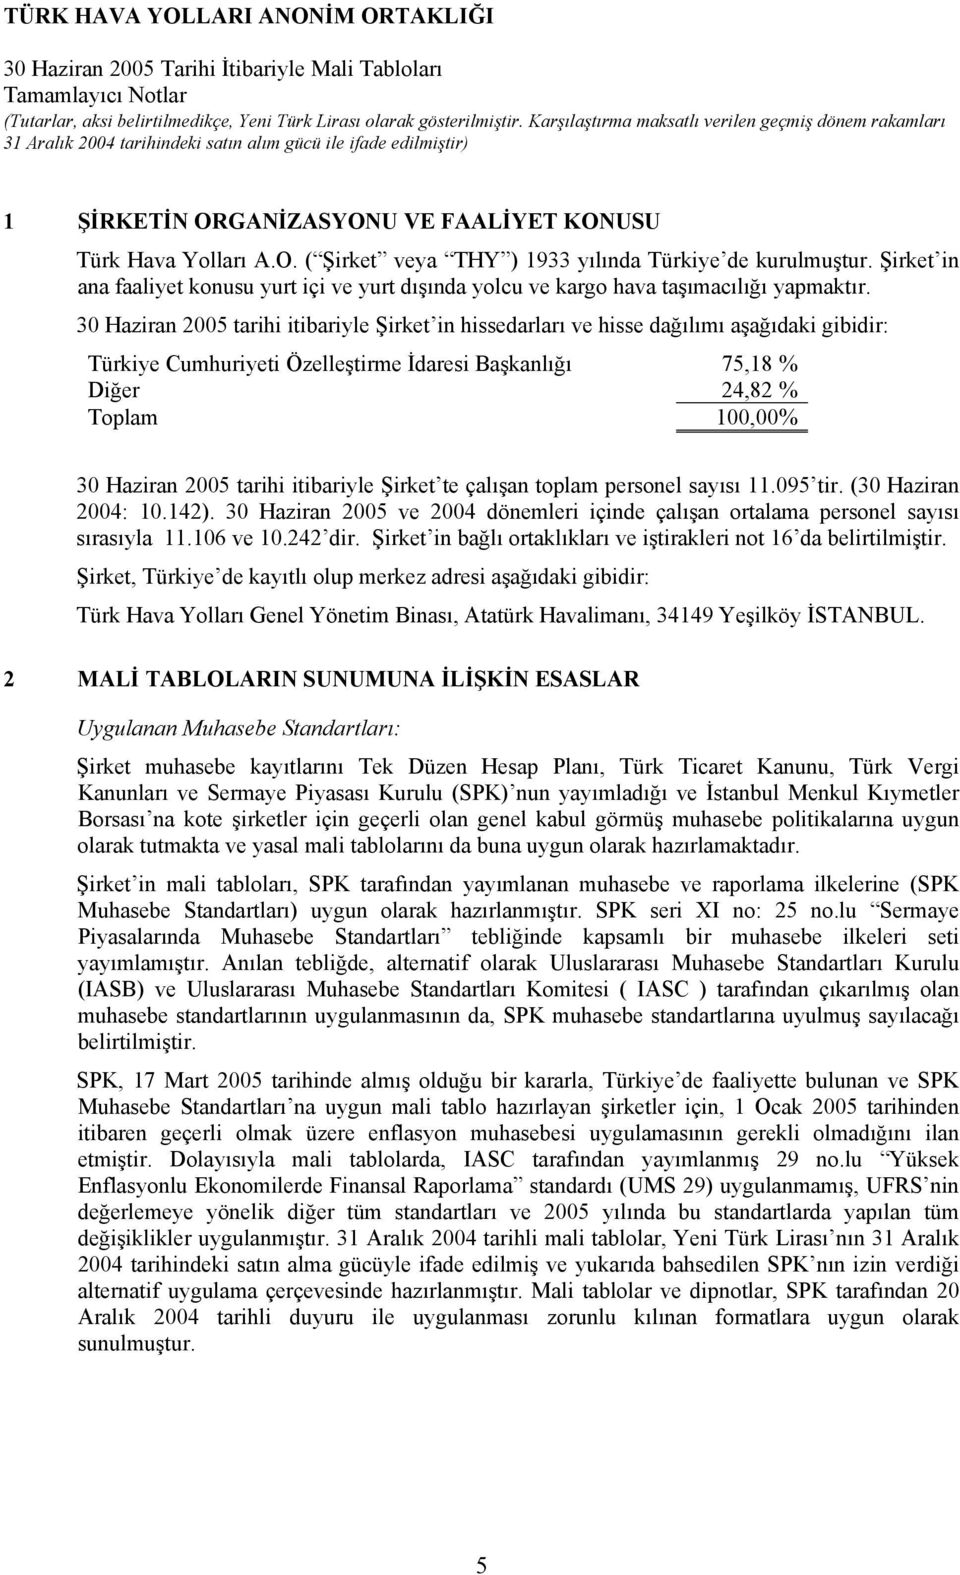 30 Haziran 2005 tarihi itibariyle Şirket in hissedarları ve hisse dağılımı aşağıdaki gibidir: Türkiye Cumhuriyeti Özelleştirme İdaresi Başkanlığı 75,18 % Diğer 24,82 % Toplam 100,00% 30 Haziran 2005